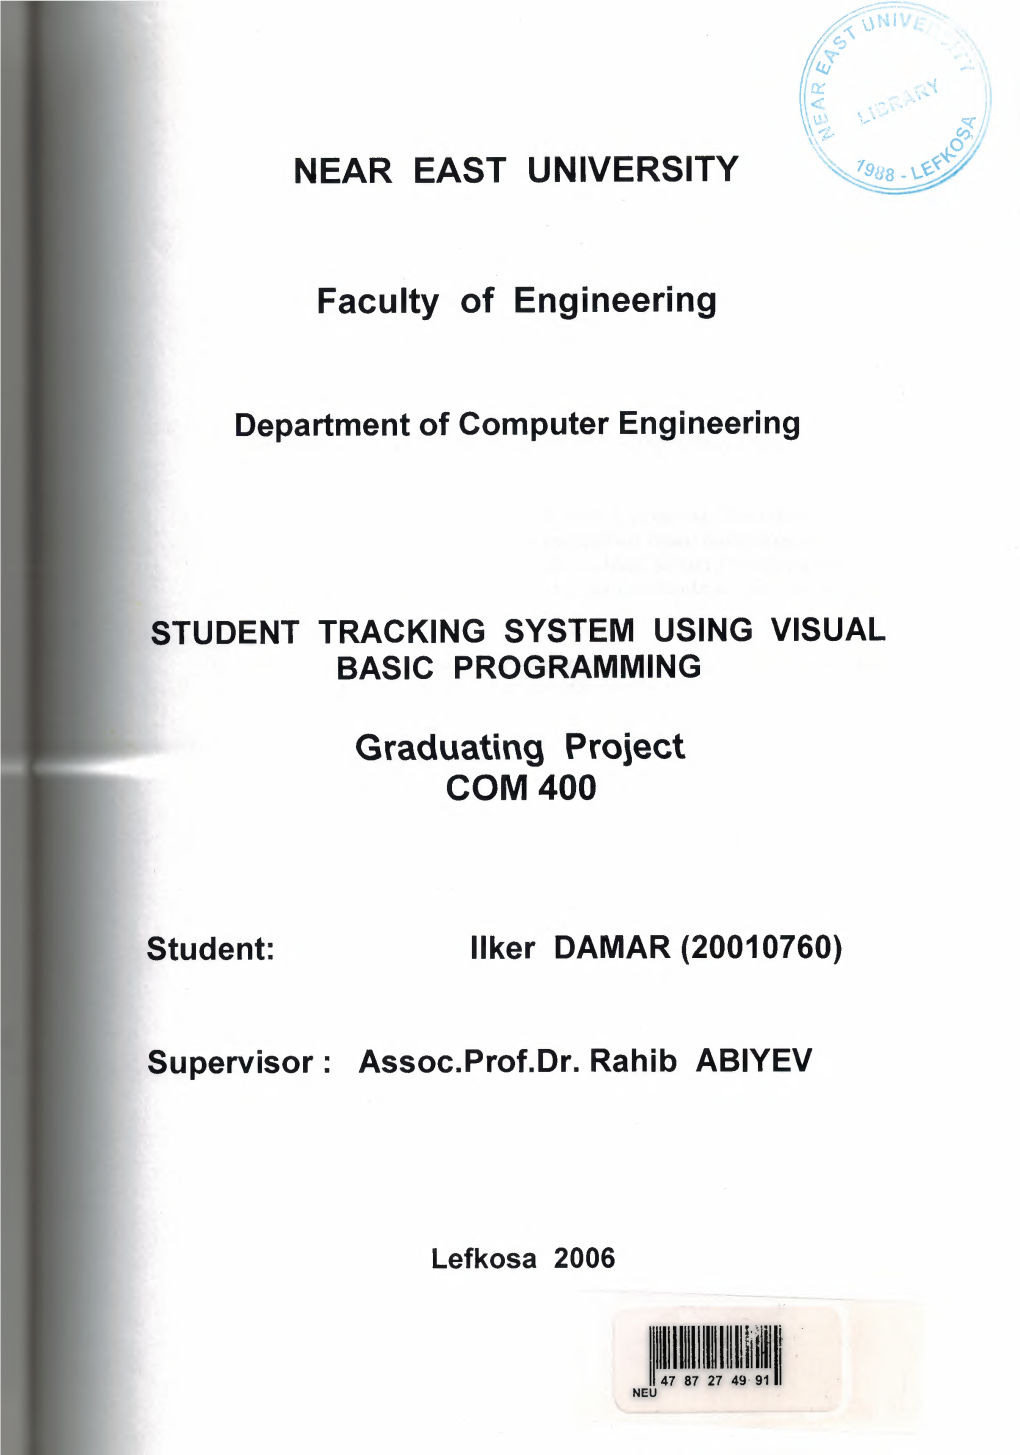 Graduating Project COM 400